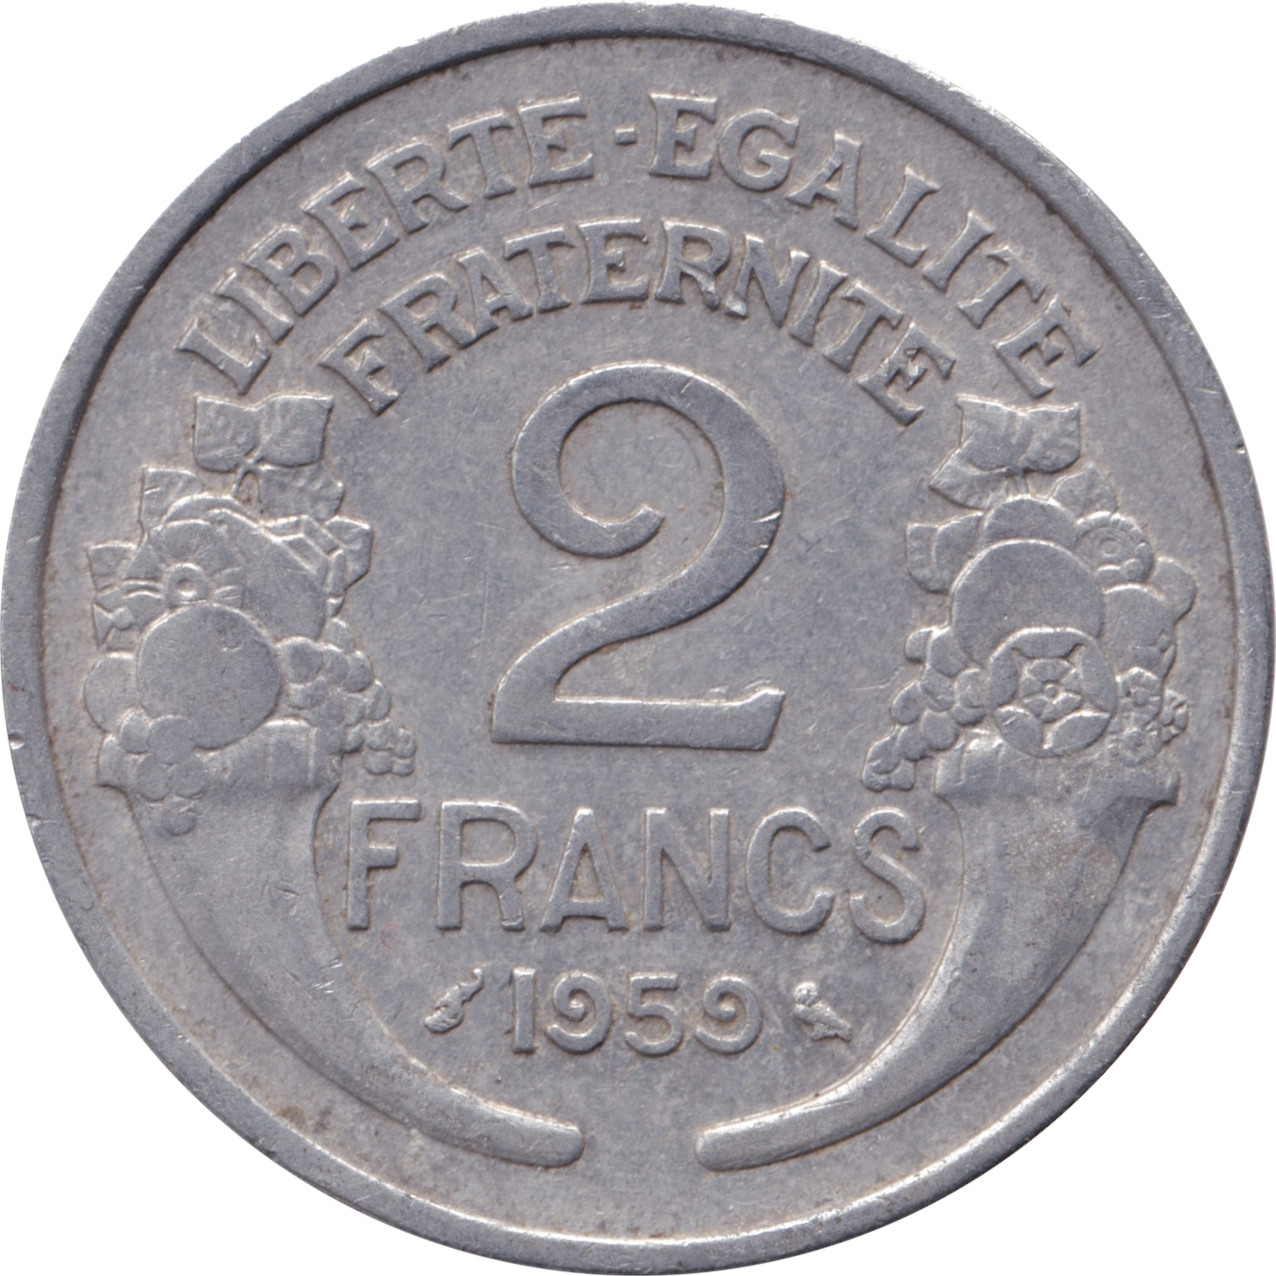 2 francs - Morlon